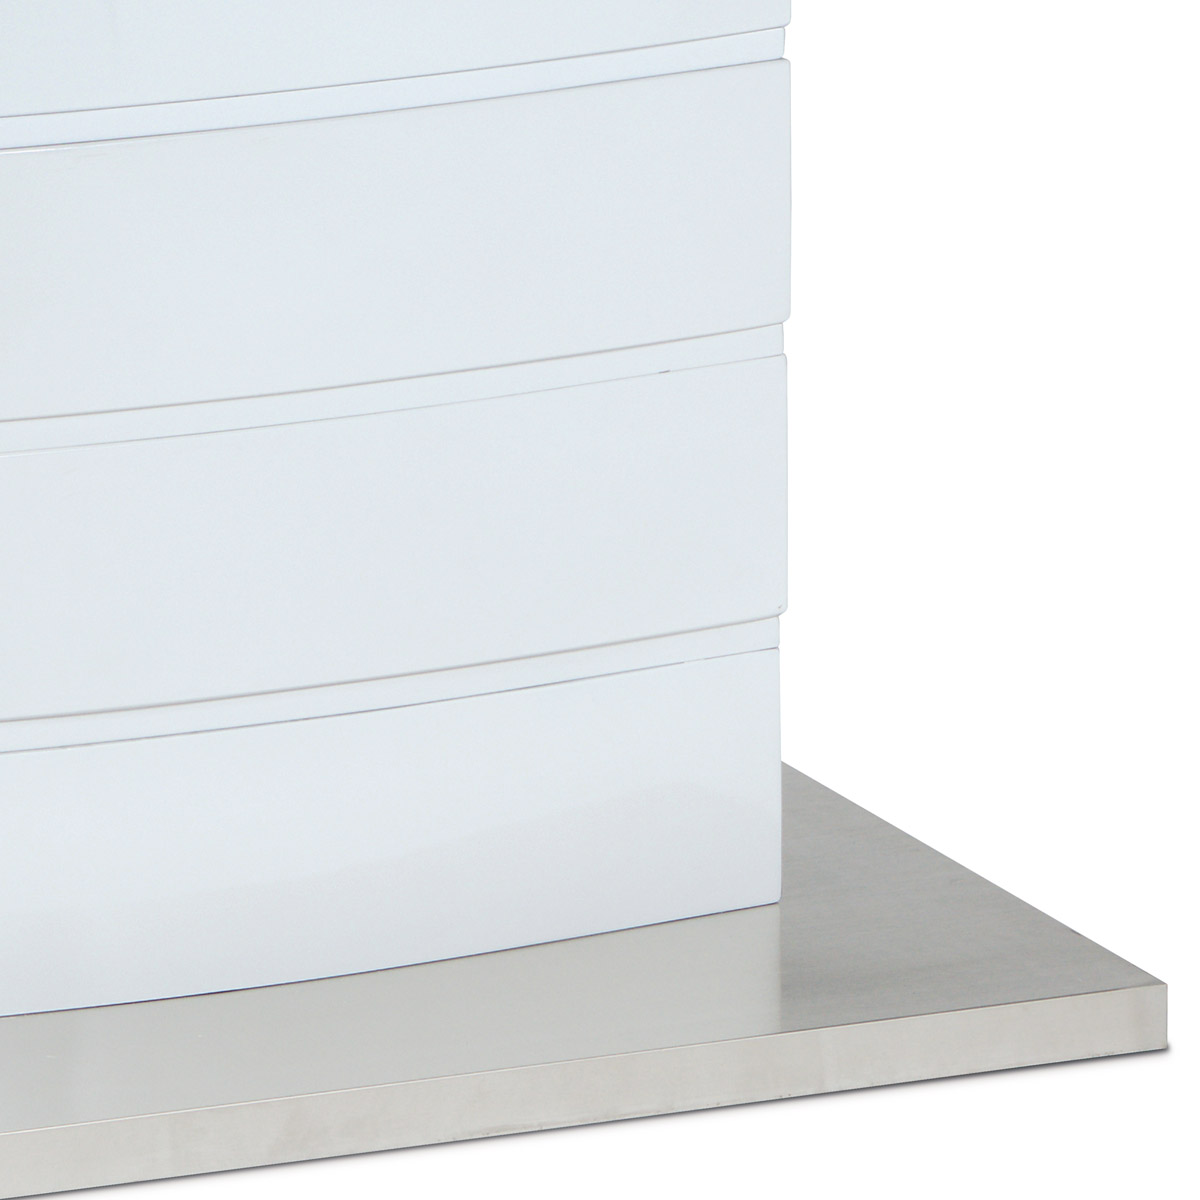 Rozkládací jídelní stůl 140+40x80x76 cm, bílé sklo, bílý vysoký lesk, broušený n